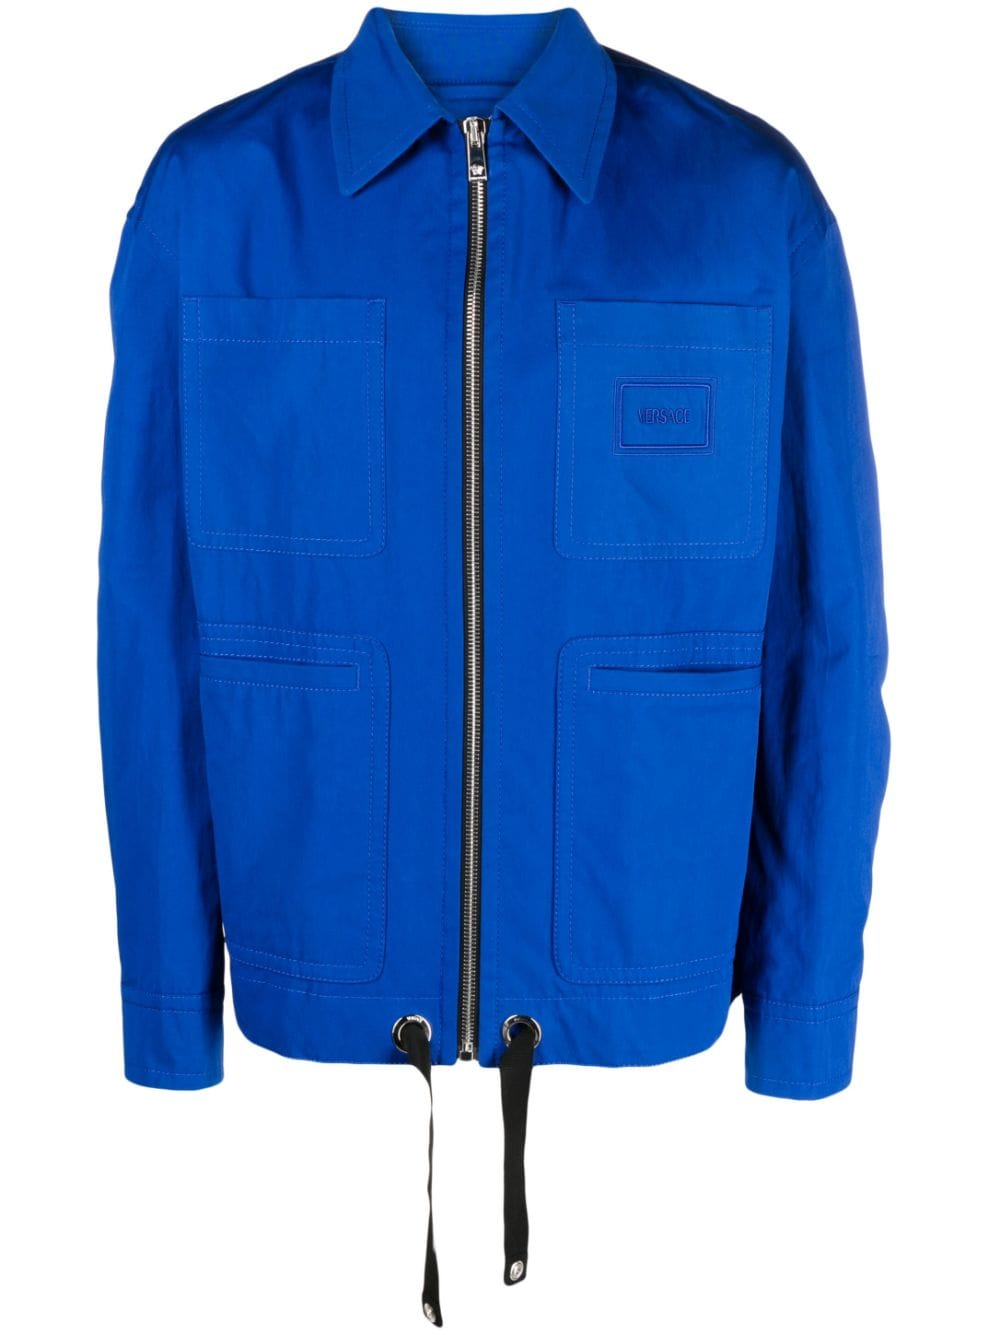 Versace zip-up shirt jacket - Blue